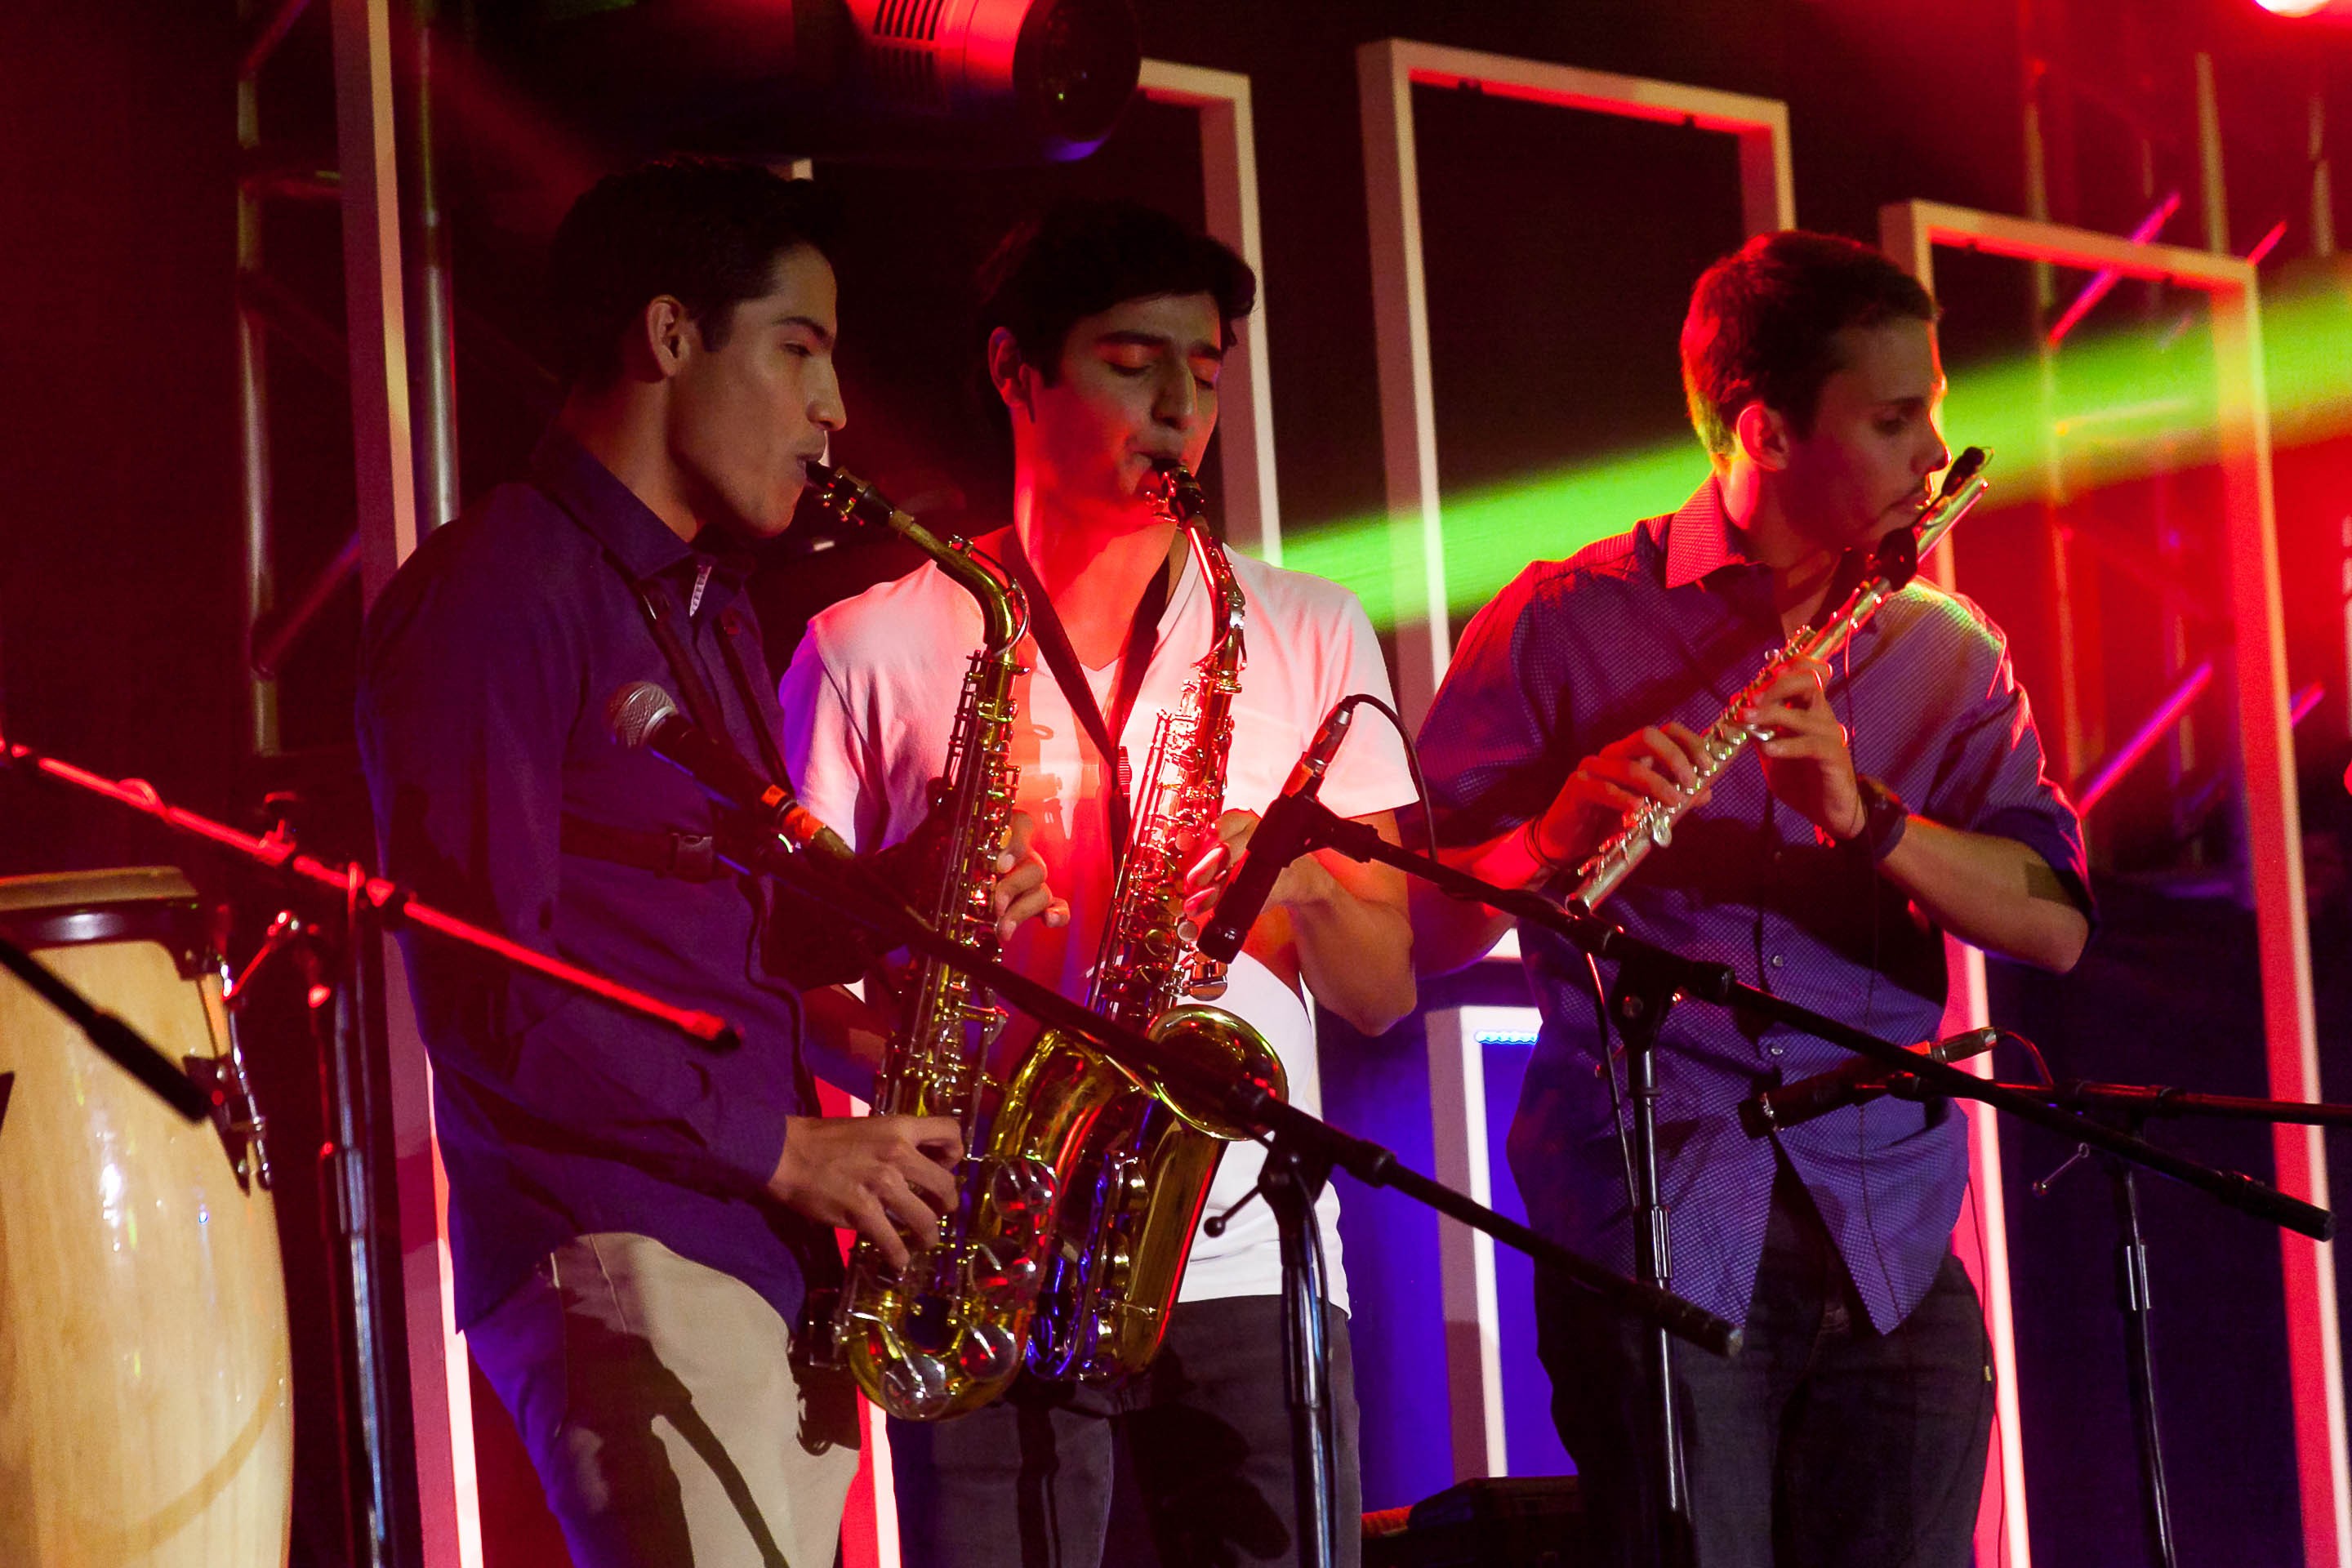 Festival de la Canción final campus Querétaro